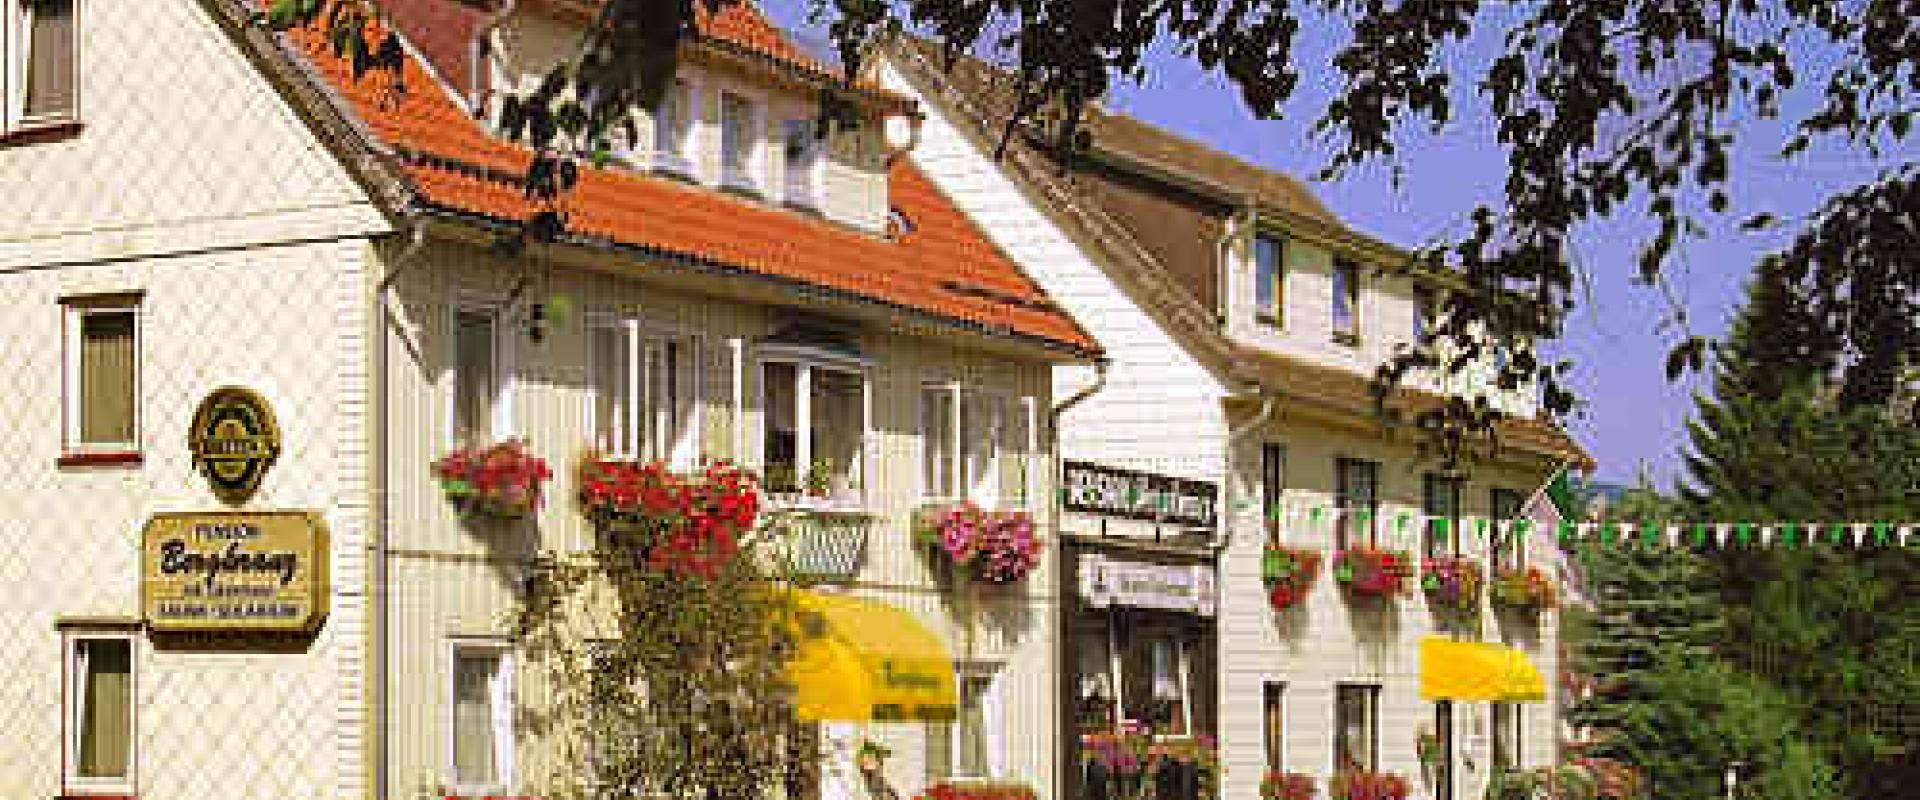 15934 Biker Hotel Bergkranz im Harz/Eichsfeld/Kyffhäuser.jpg